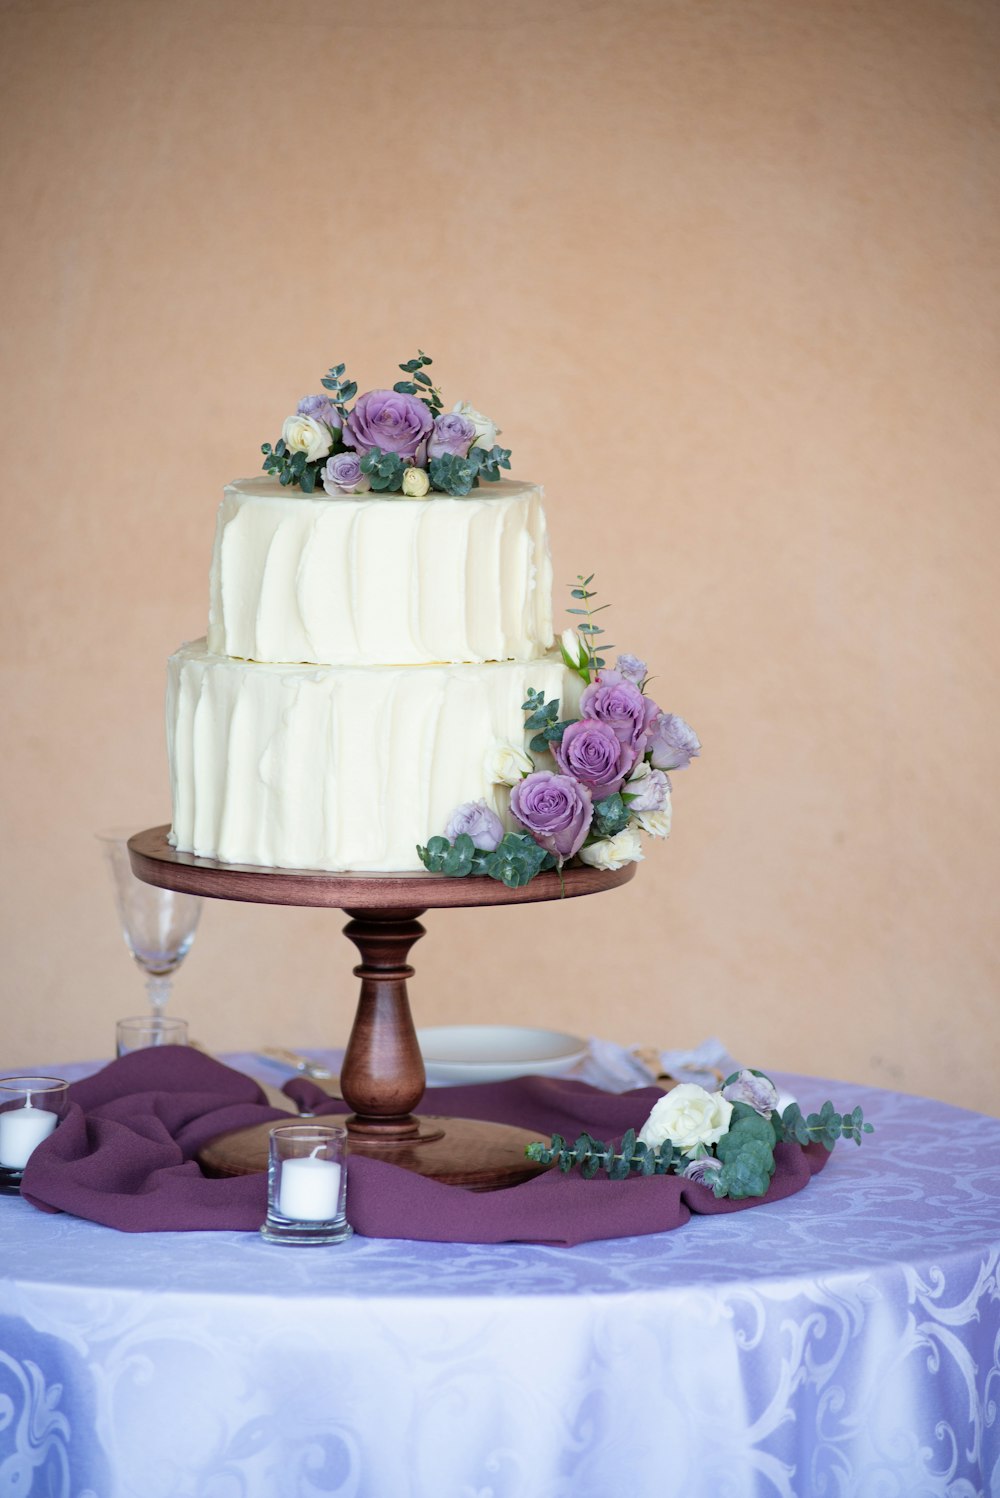 Gâteau floral blanc et rose sur support en bois brun